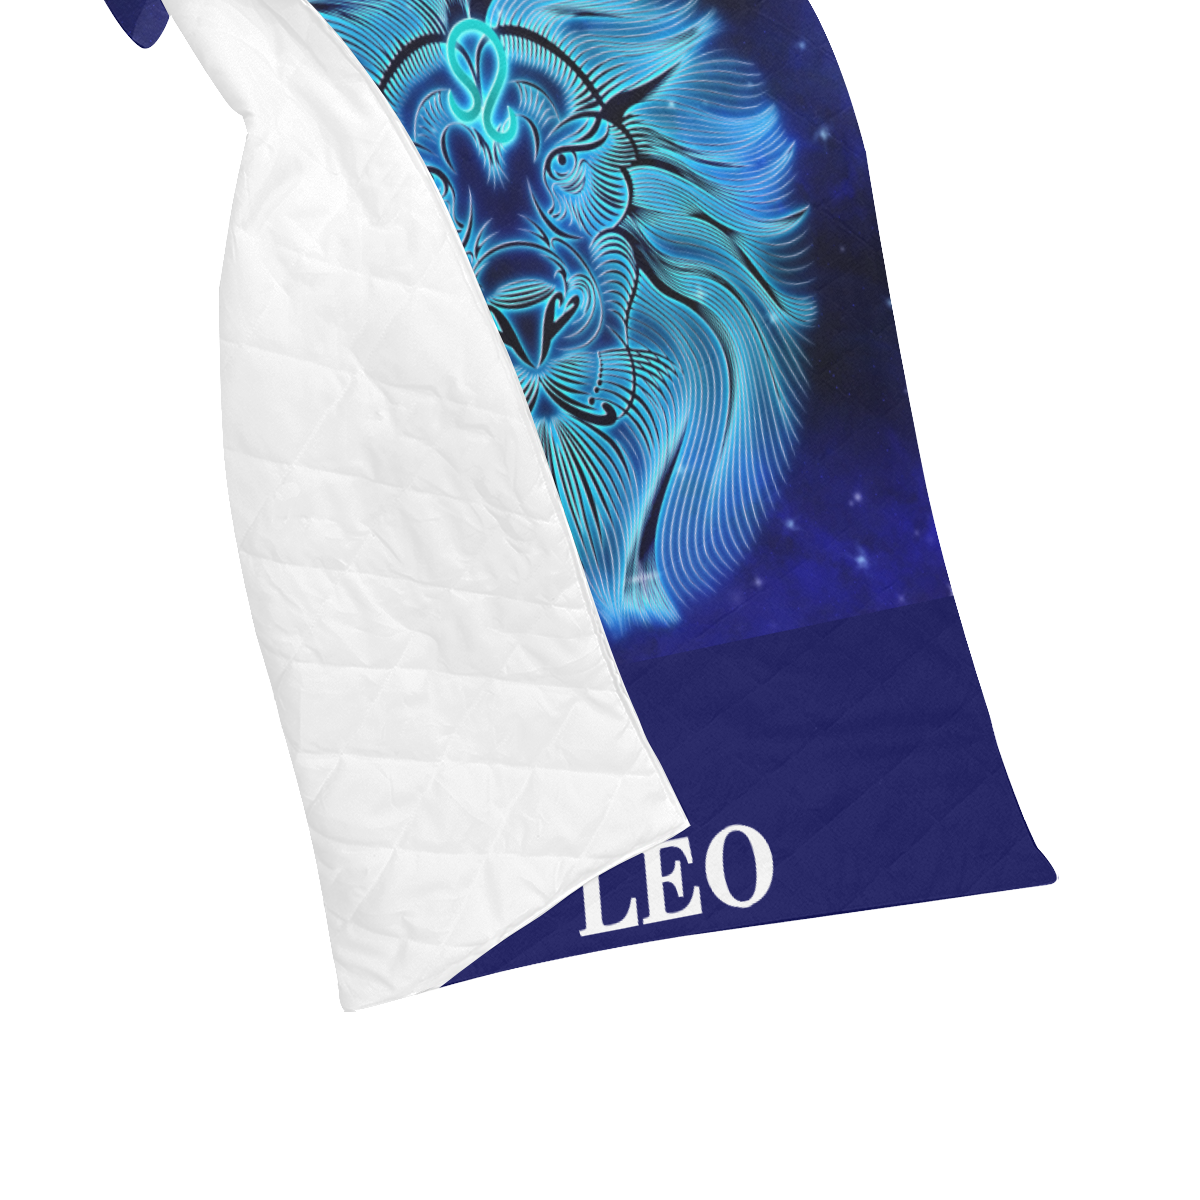 Leo design Quilt 40"x50"